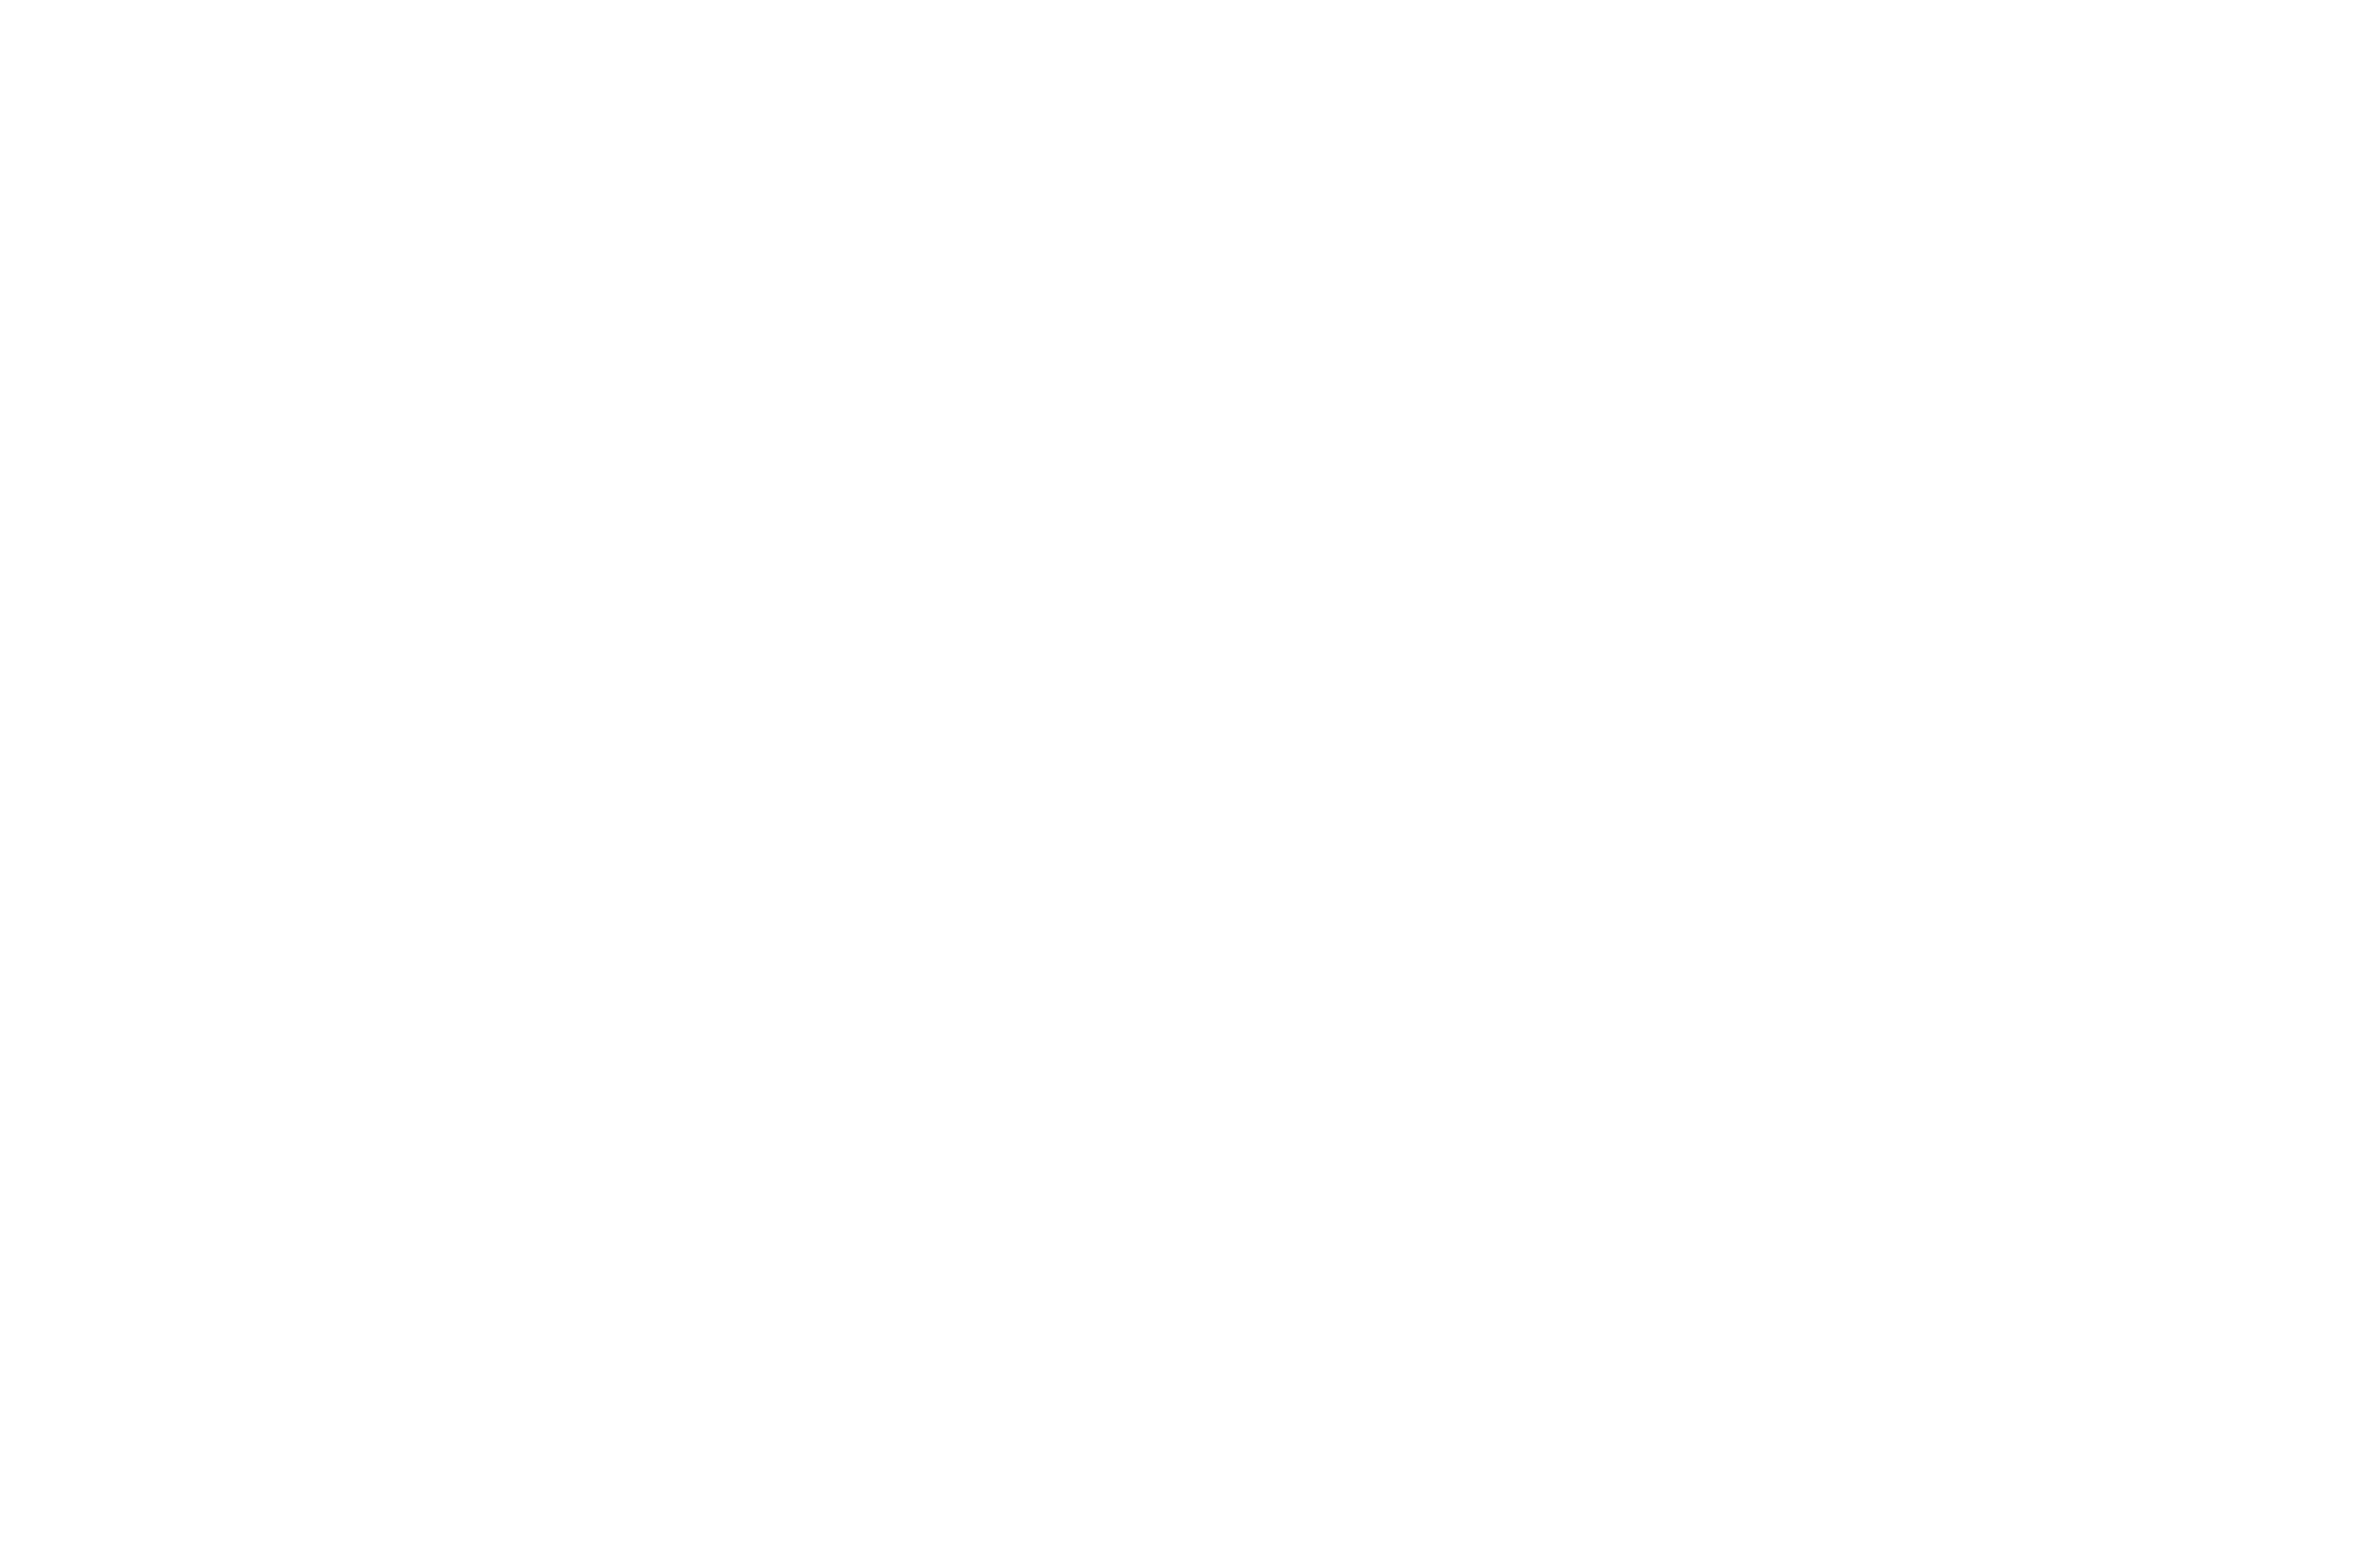 Partenaire Industrie